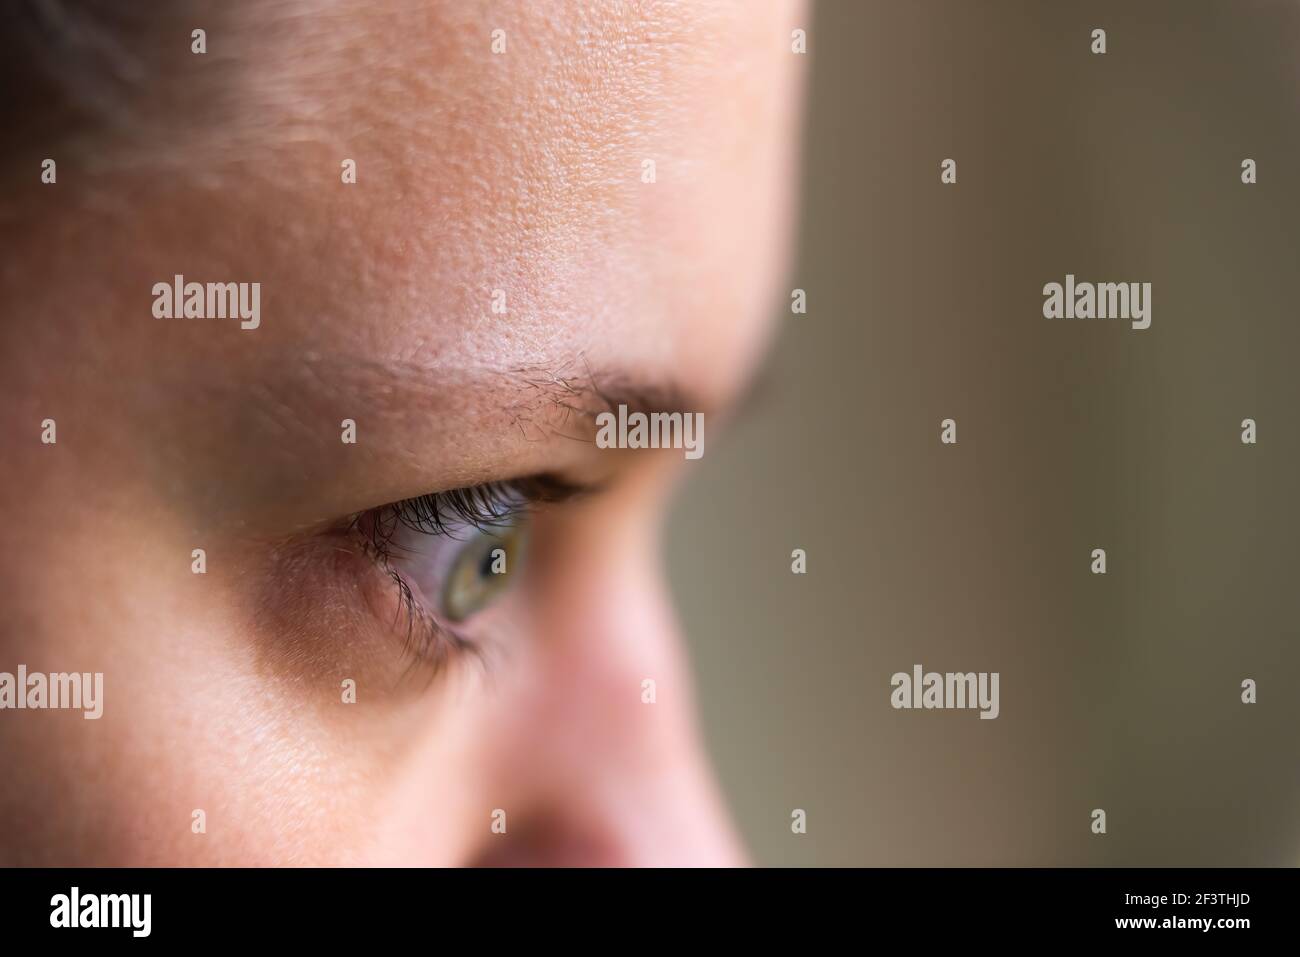 Macro gros plan de la jeune femme visage portrait dans le côté profil Avec la maladie de grave hyperthyroïdie symptômes de l'ophtalmopathie gonflement des yeux proptose edem Banque D'Images